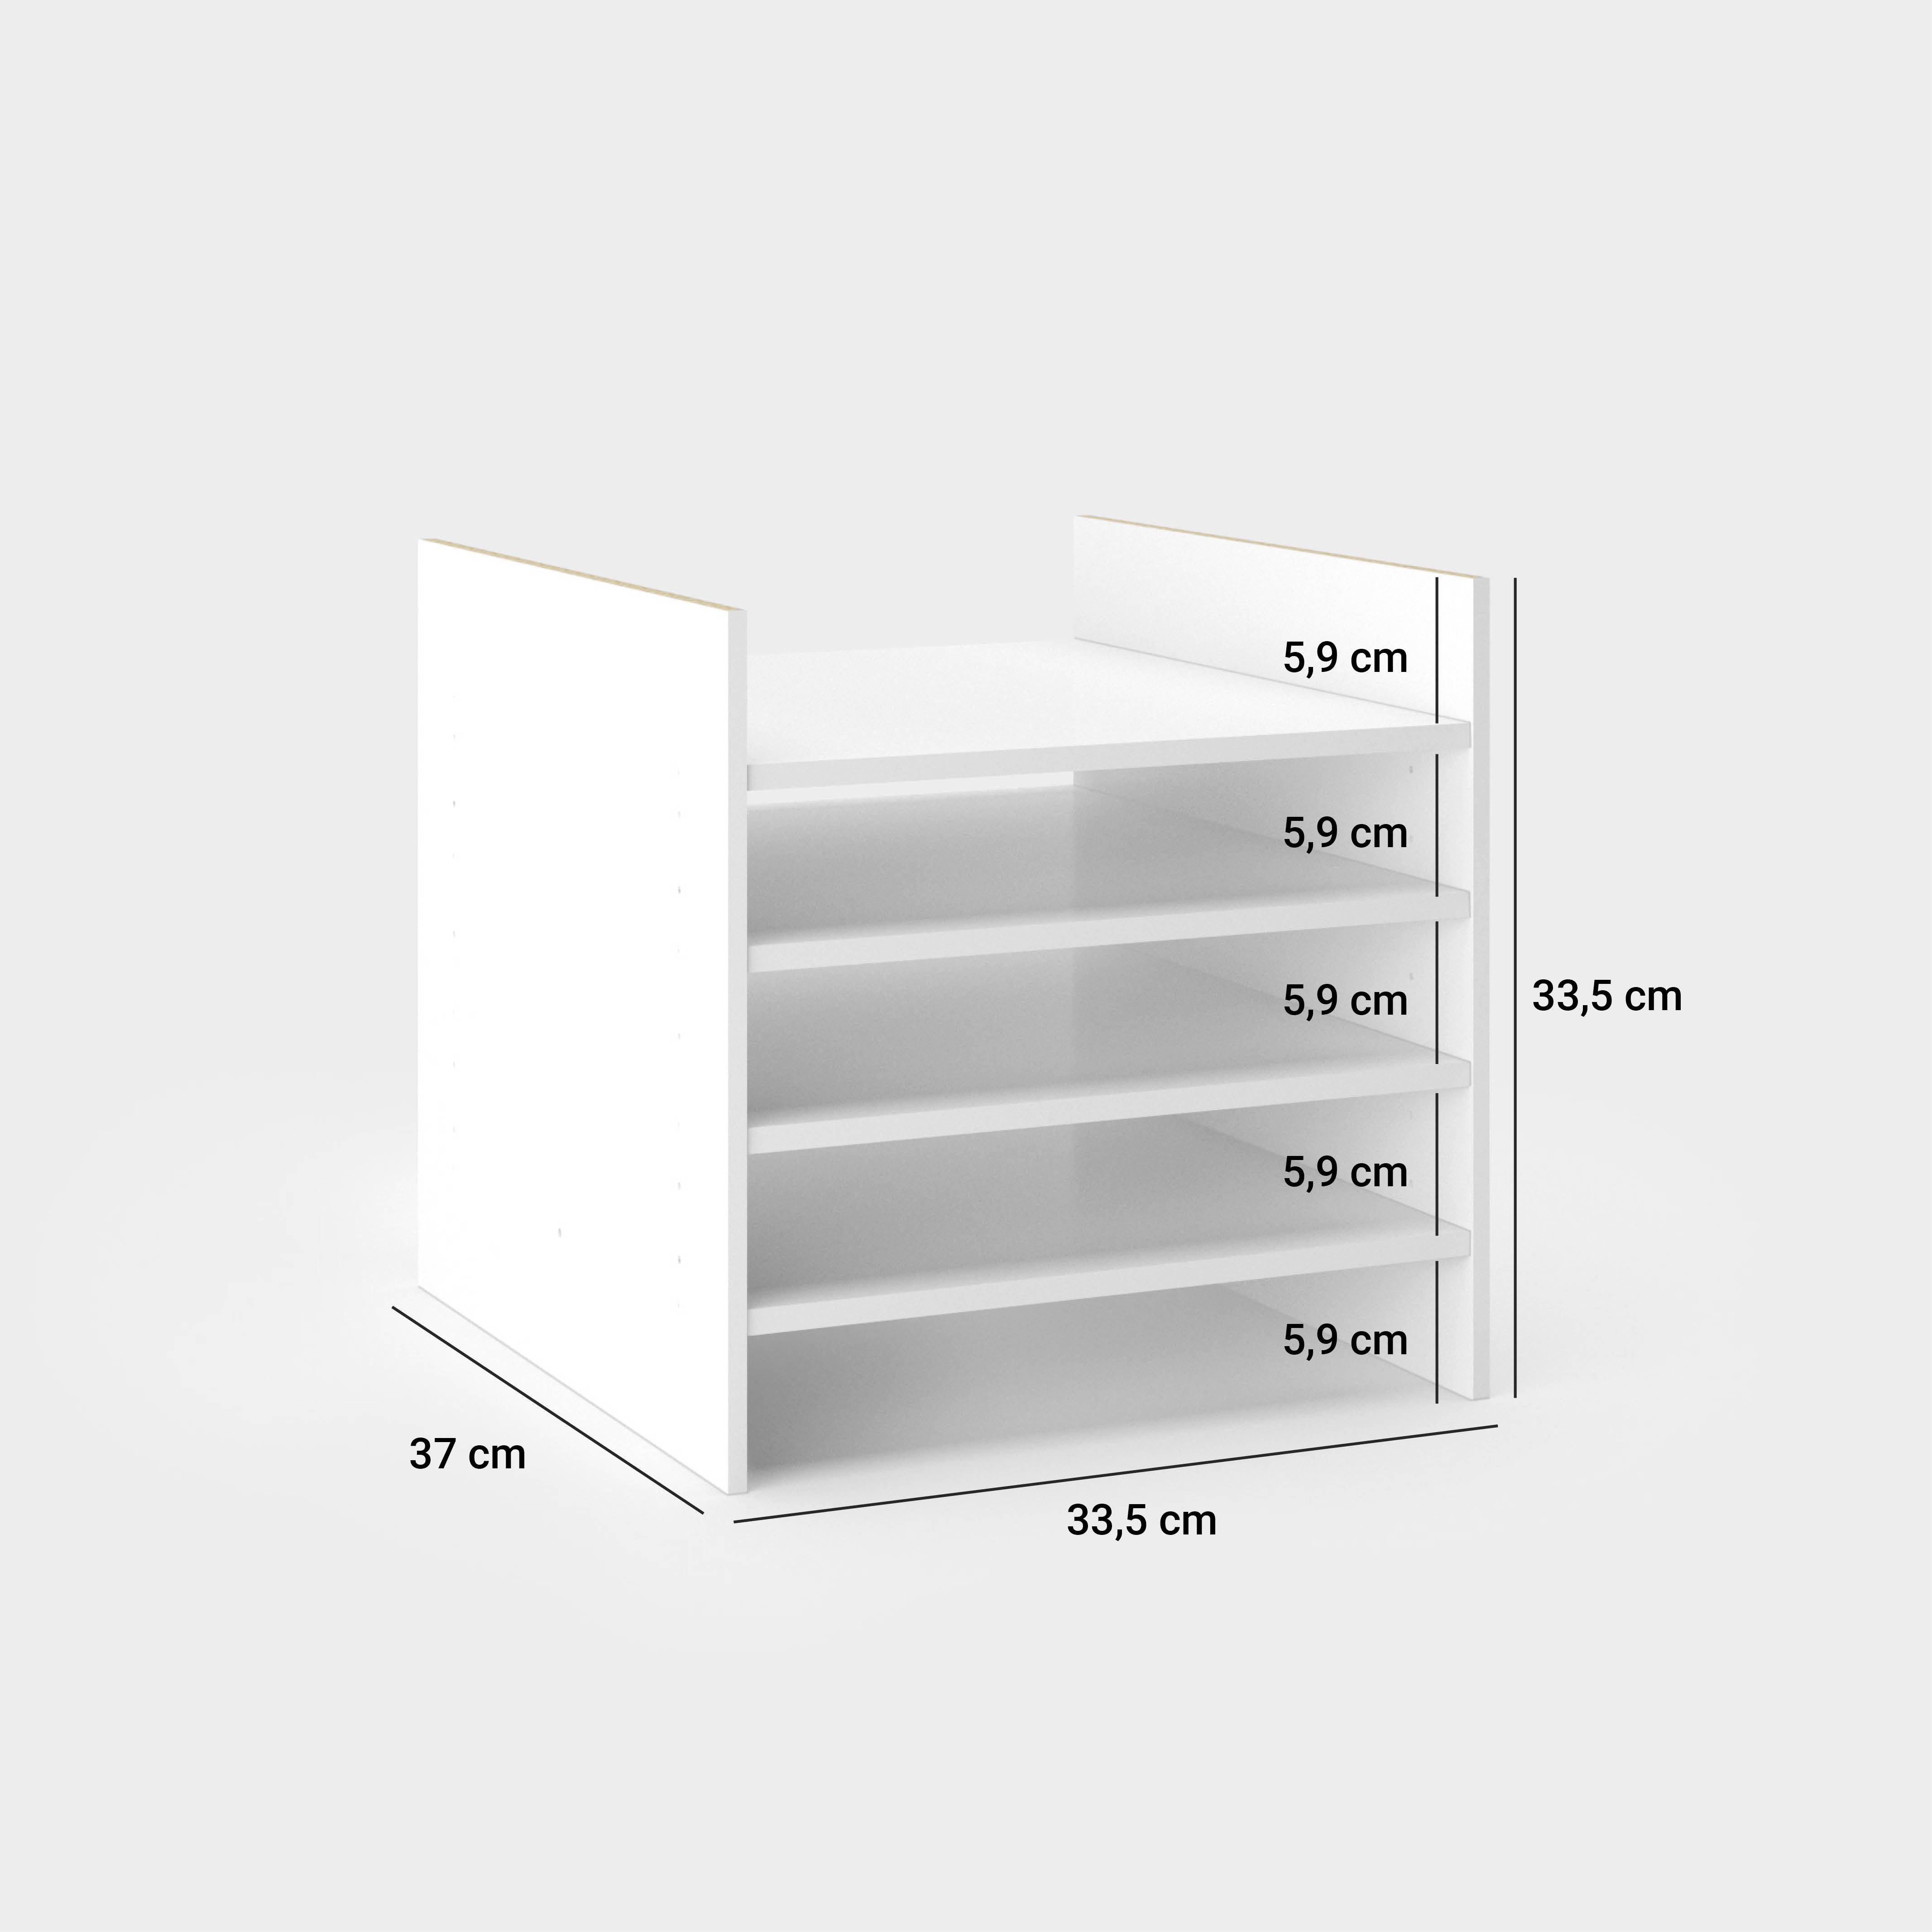 Maßangaben für die Kallax Papierablage - Höhe: 33,5 cm, Breite: 33,5 cm, Tiefe: 37 cm. Die einzelnen Zwischenfächer sind jeweils 5,9 cm hoch.